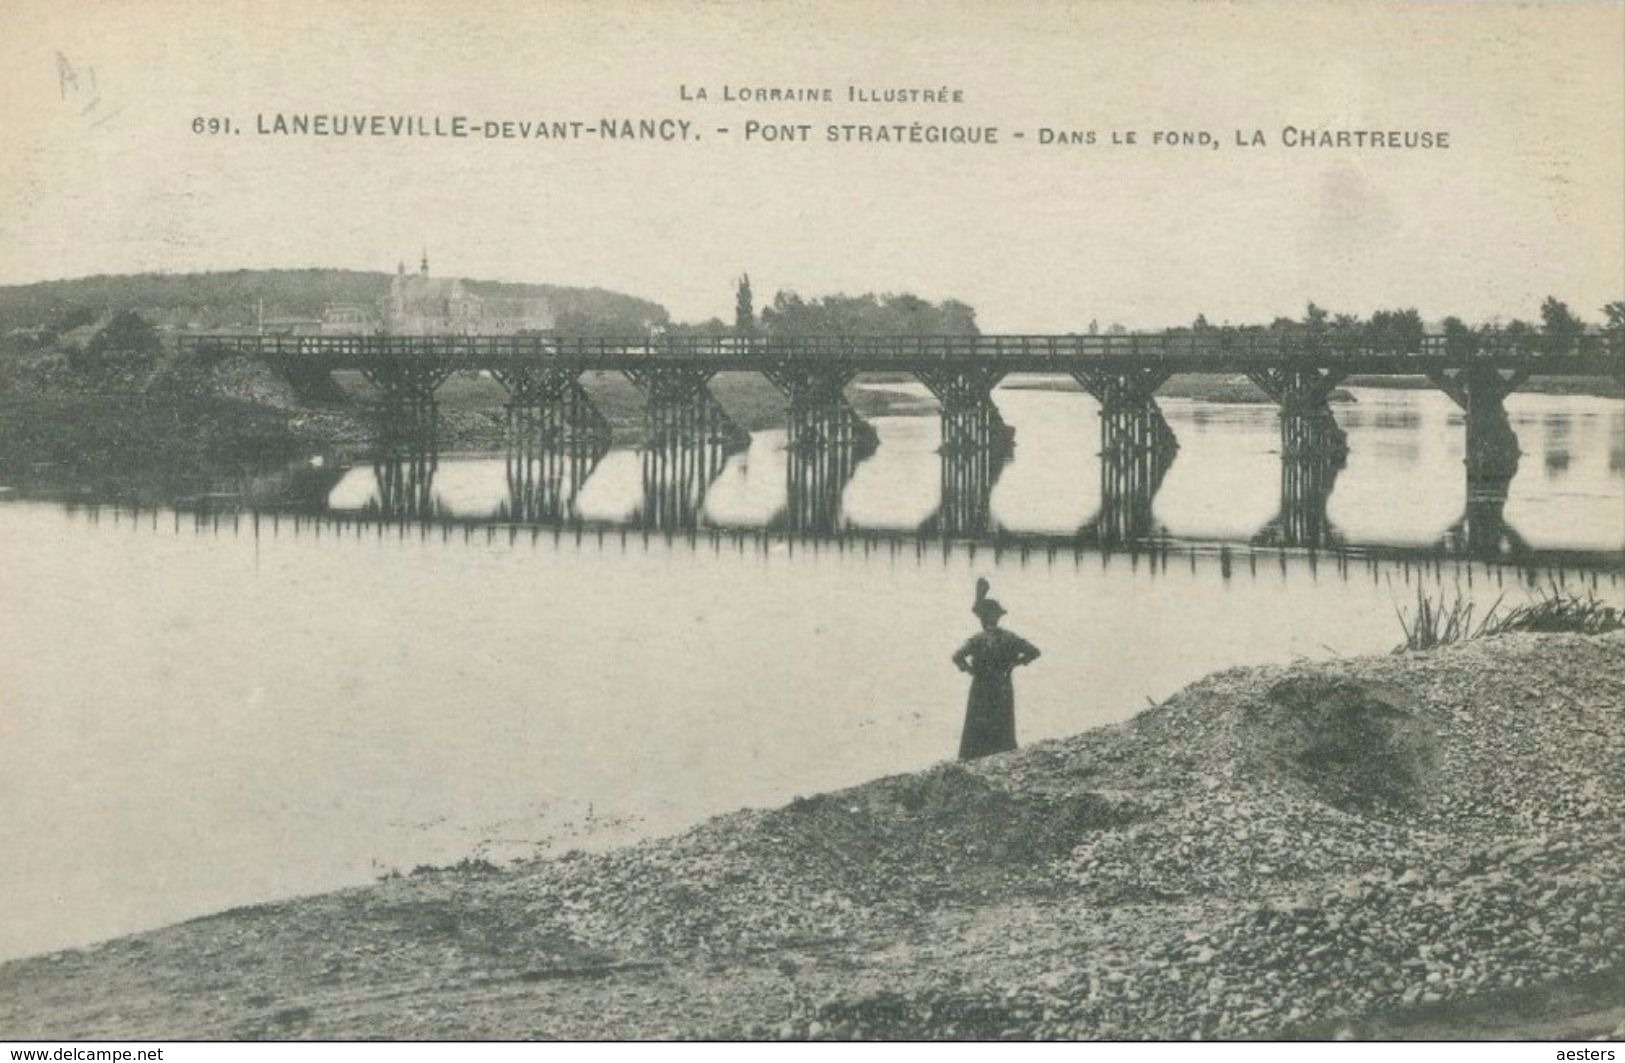 Laneuveville-devant-Nancy 1917; Pont Stratégique-Dans Le Fond, Chartreuse - écrite. (691) - Nancy